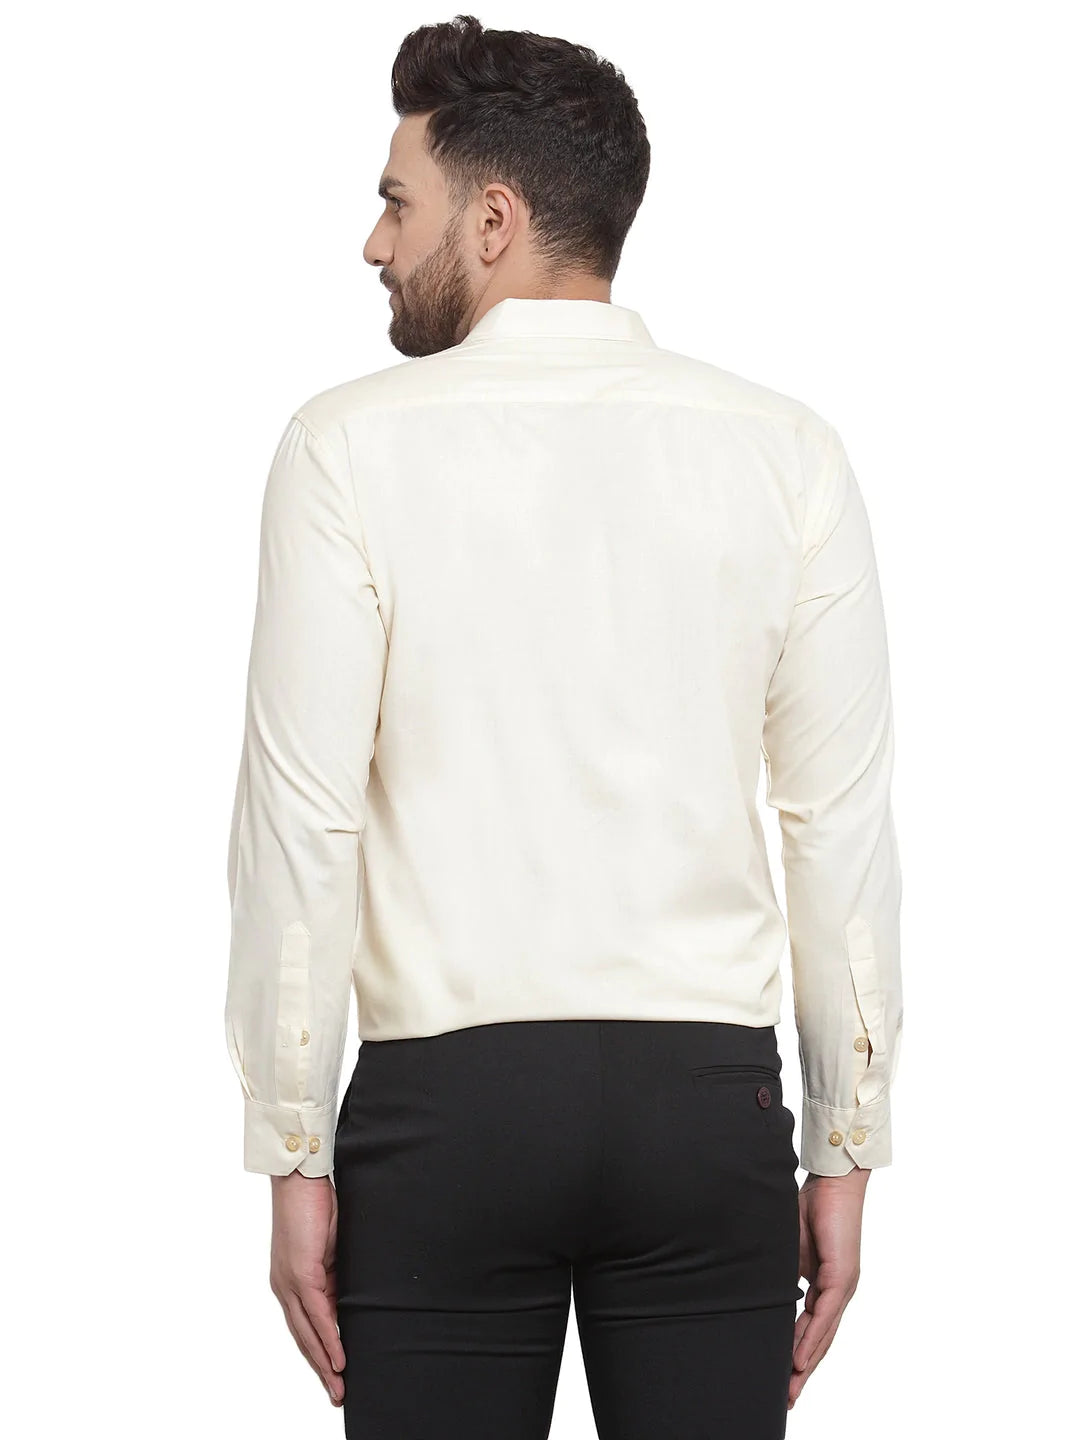 Jainish Men's Cotton Solid Cream Formal Shirt's ( SF 361Cream )